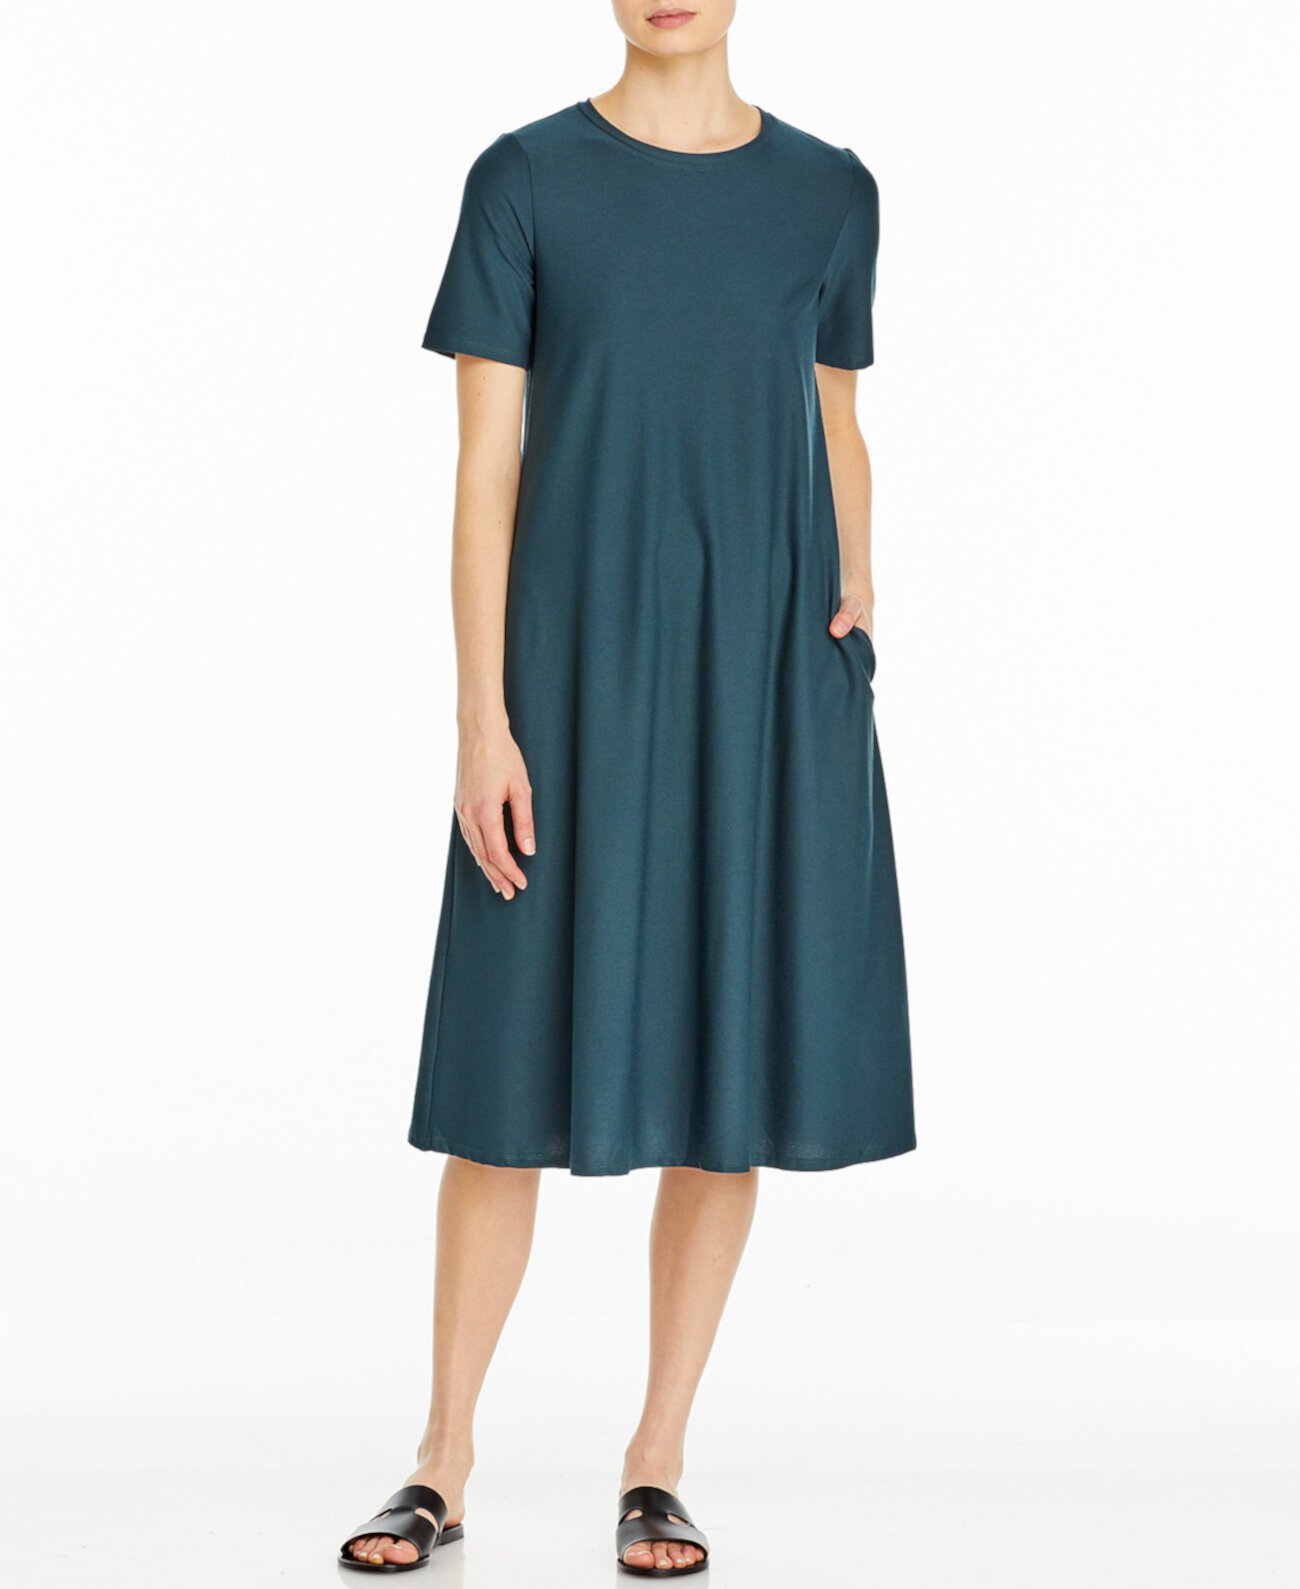 Платье с круглым вырезом, доступное в стандартных и миниатюрных размерах Eileen Fisher